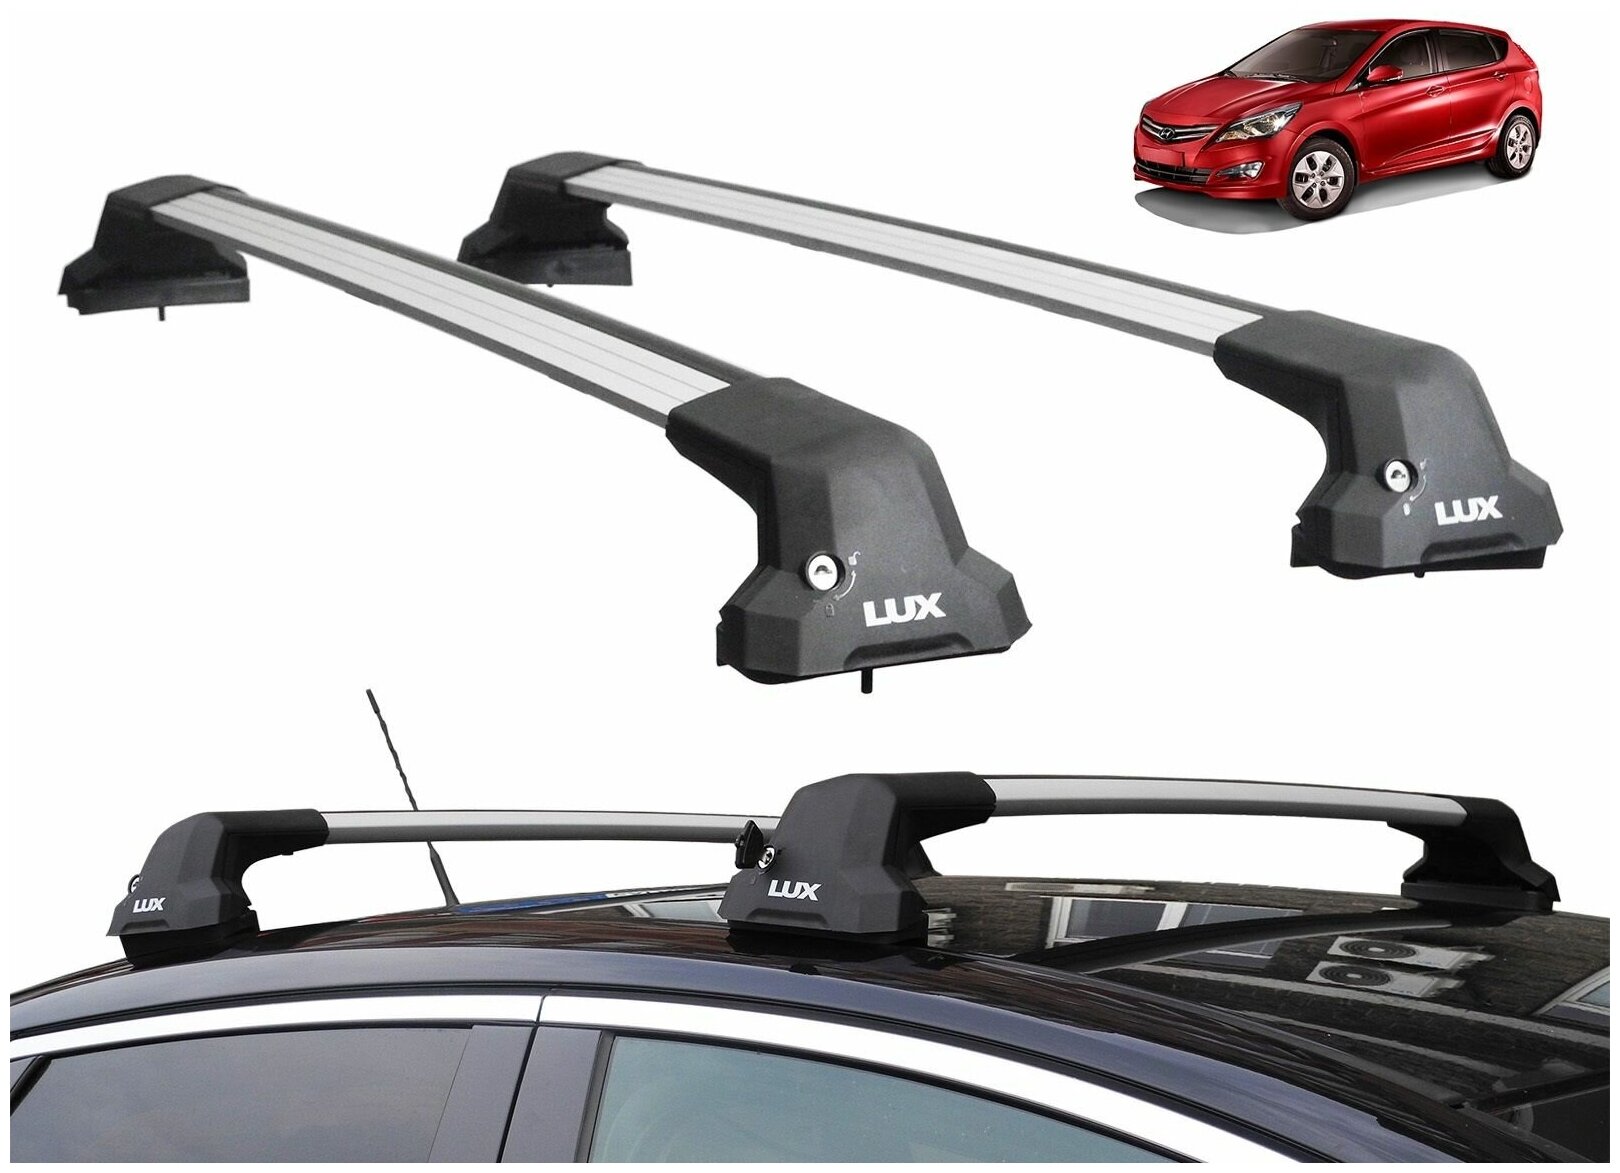 Багажник на крышу Хендай Солярис, хэтчбек, 2011-2016 (Hyundai Solaris, hatchback, 2011-2016), Lux City, серебристые дуги